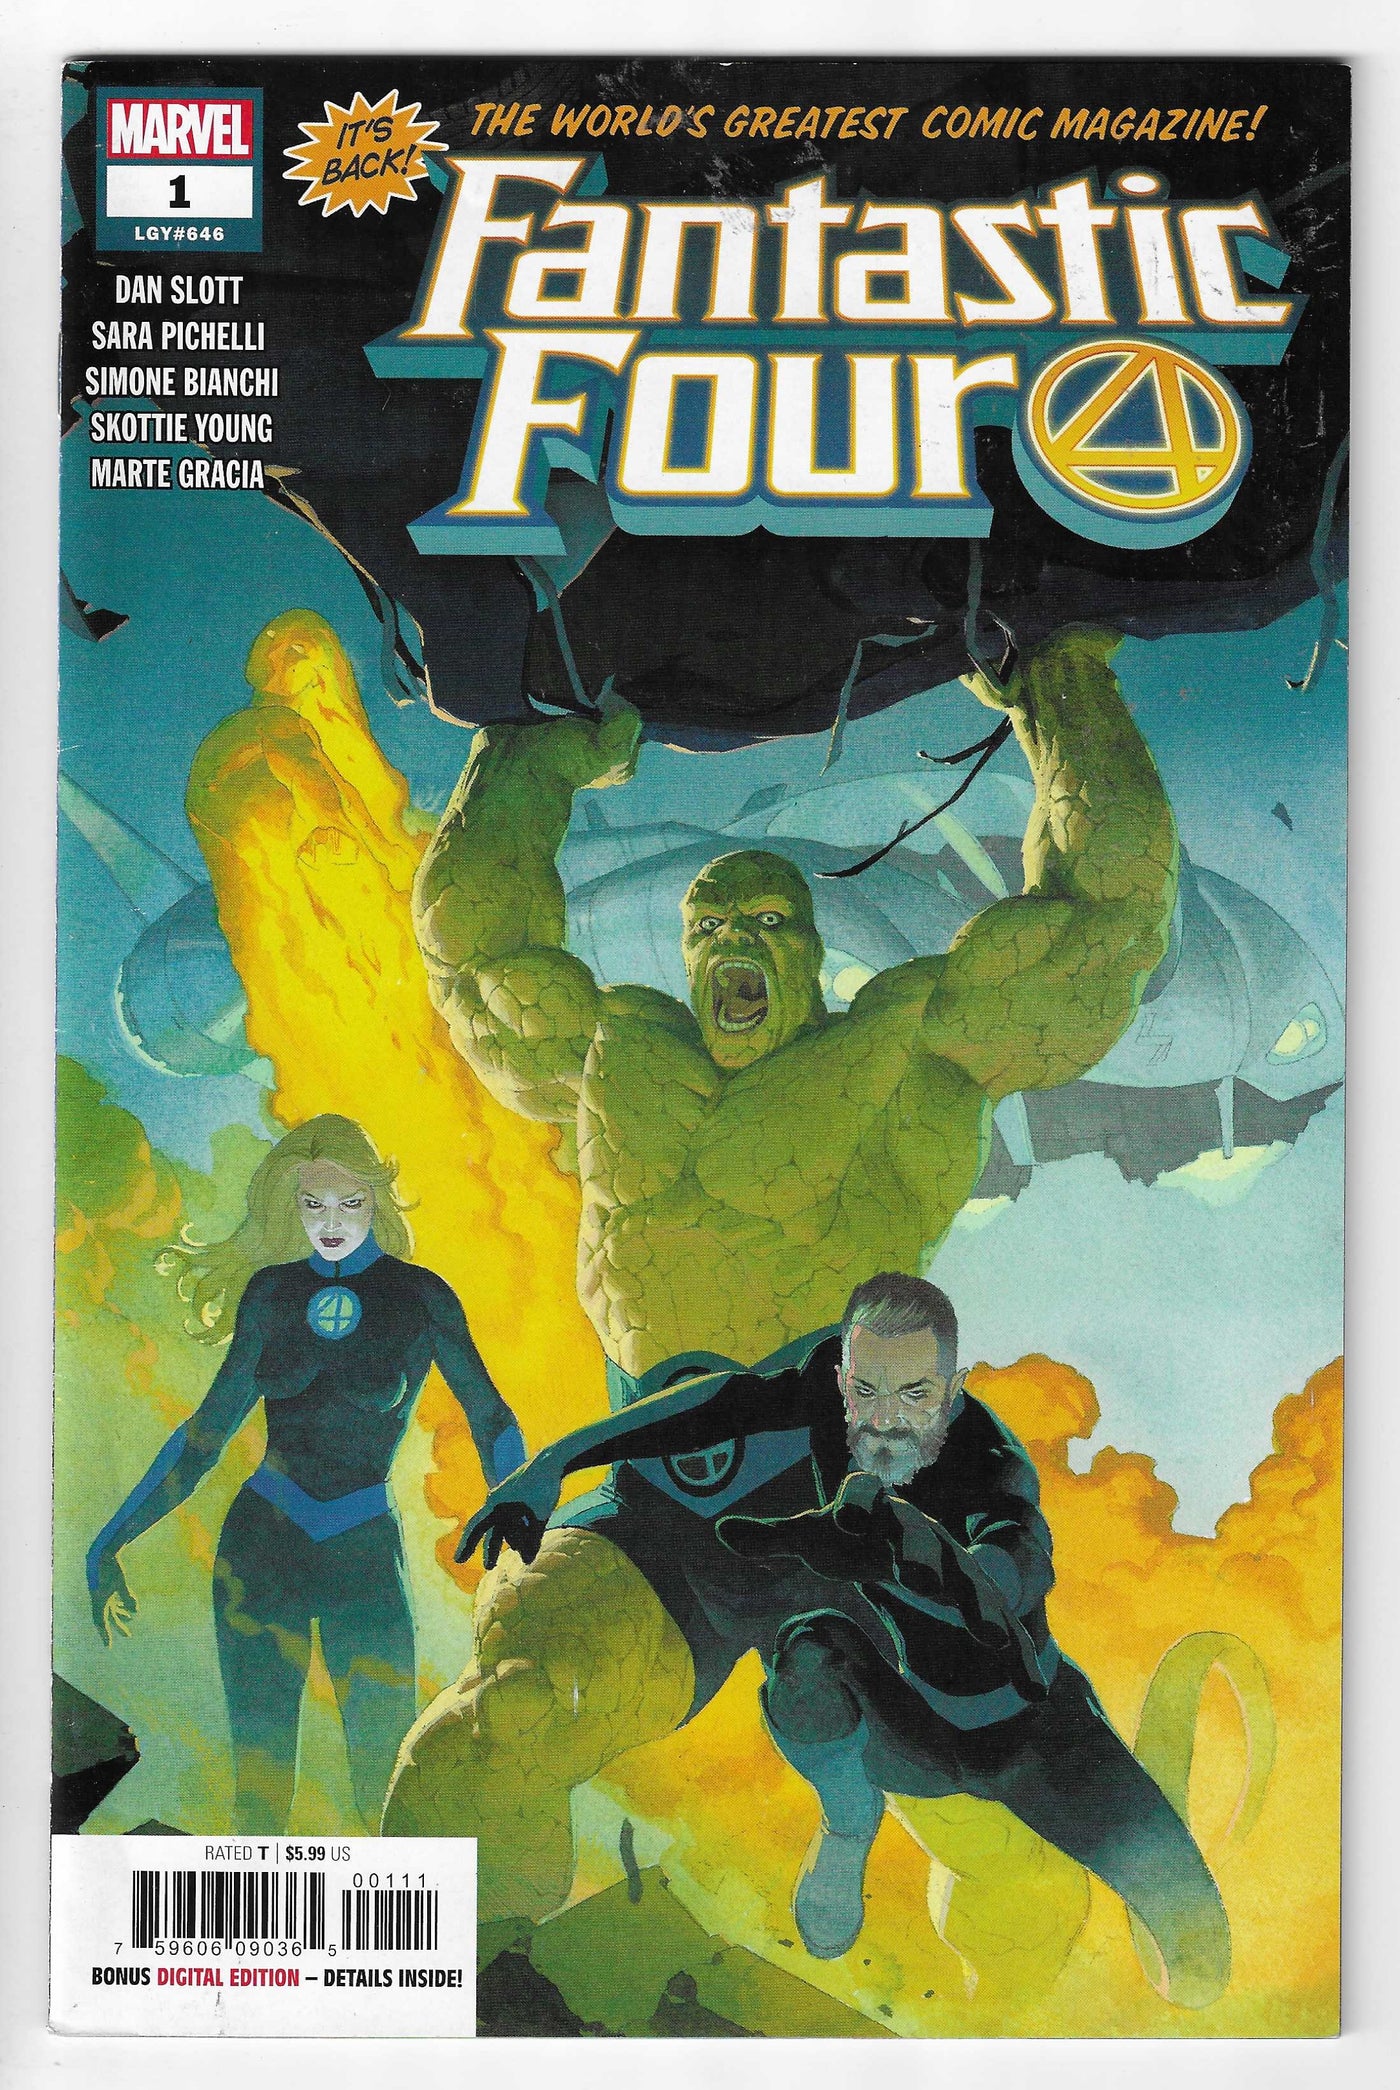 Fantastic Four (Volume 6) #1